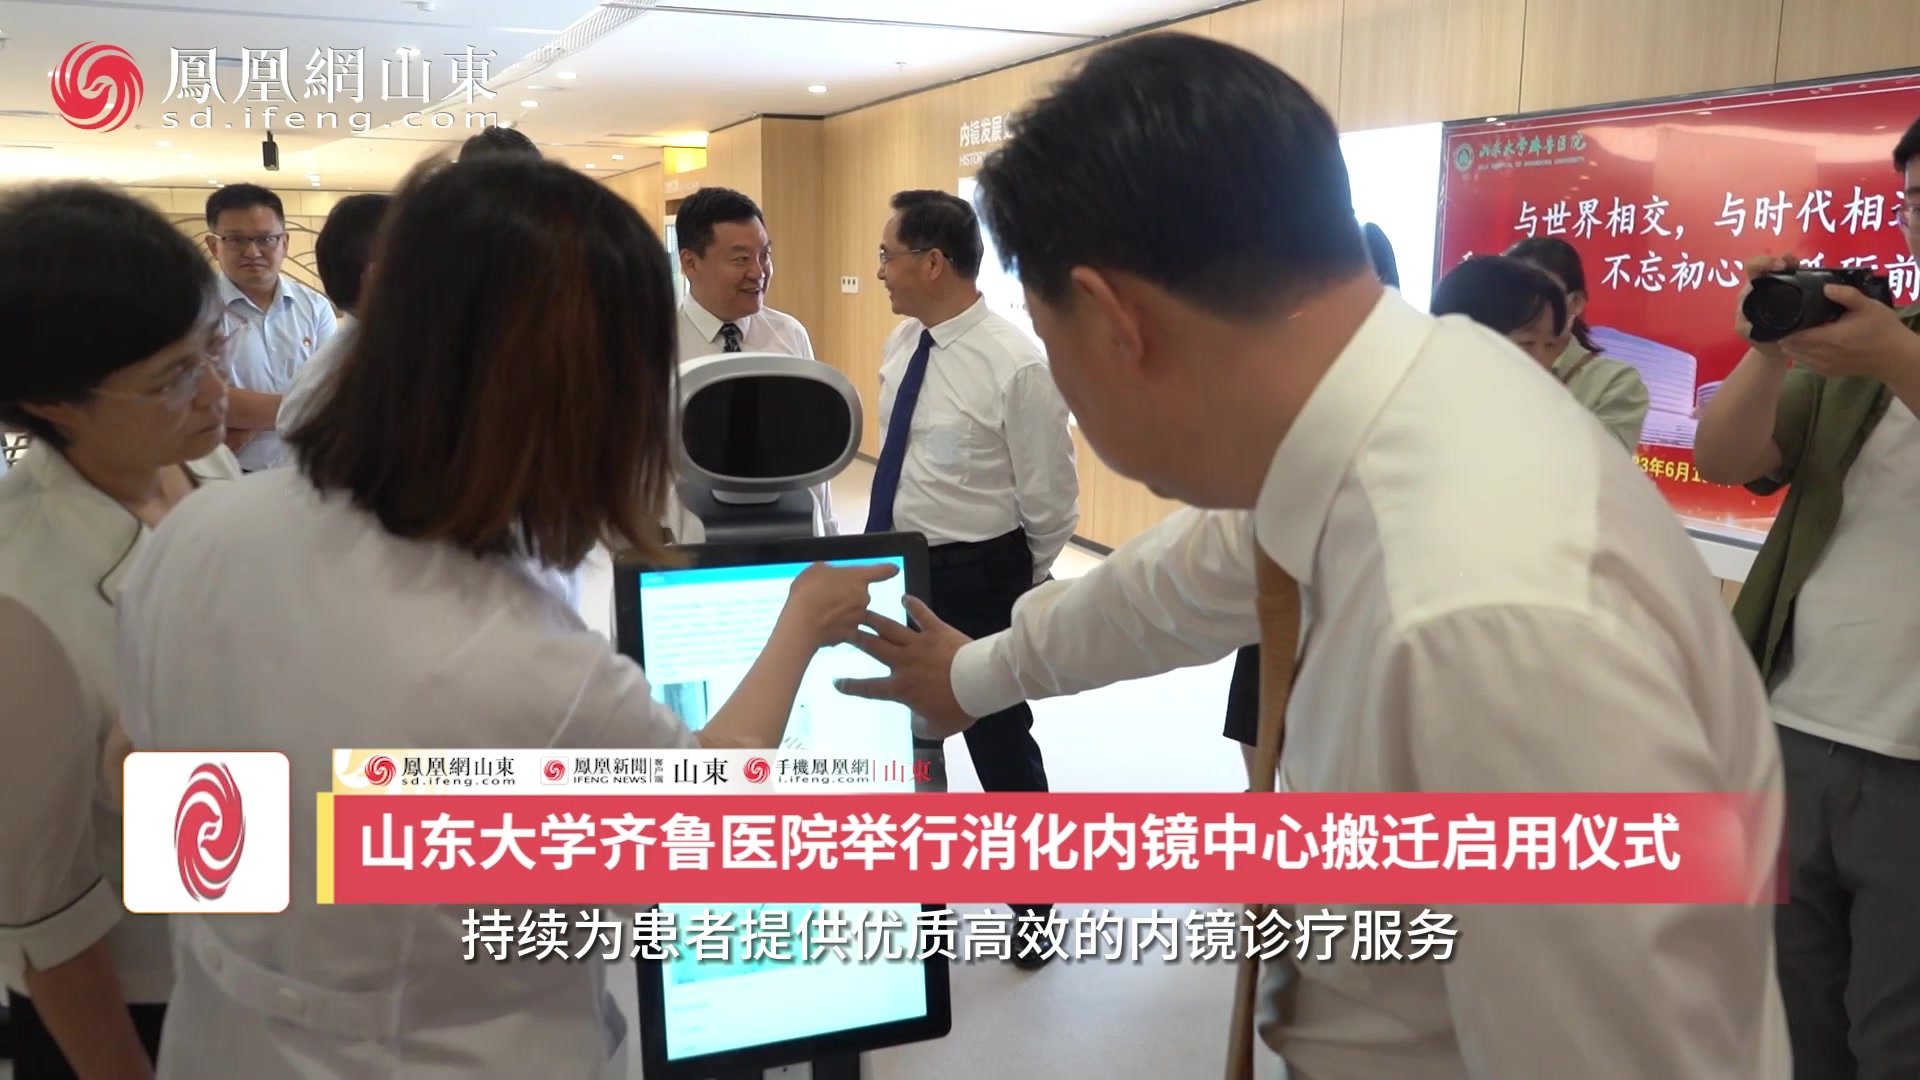 凤凰视频 | 齐鲁医院举行消化内镜中心搬迁启用仪式